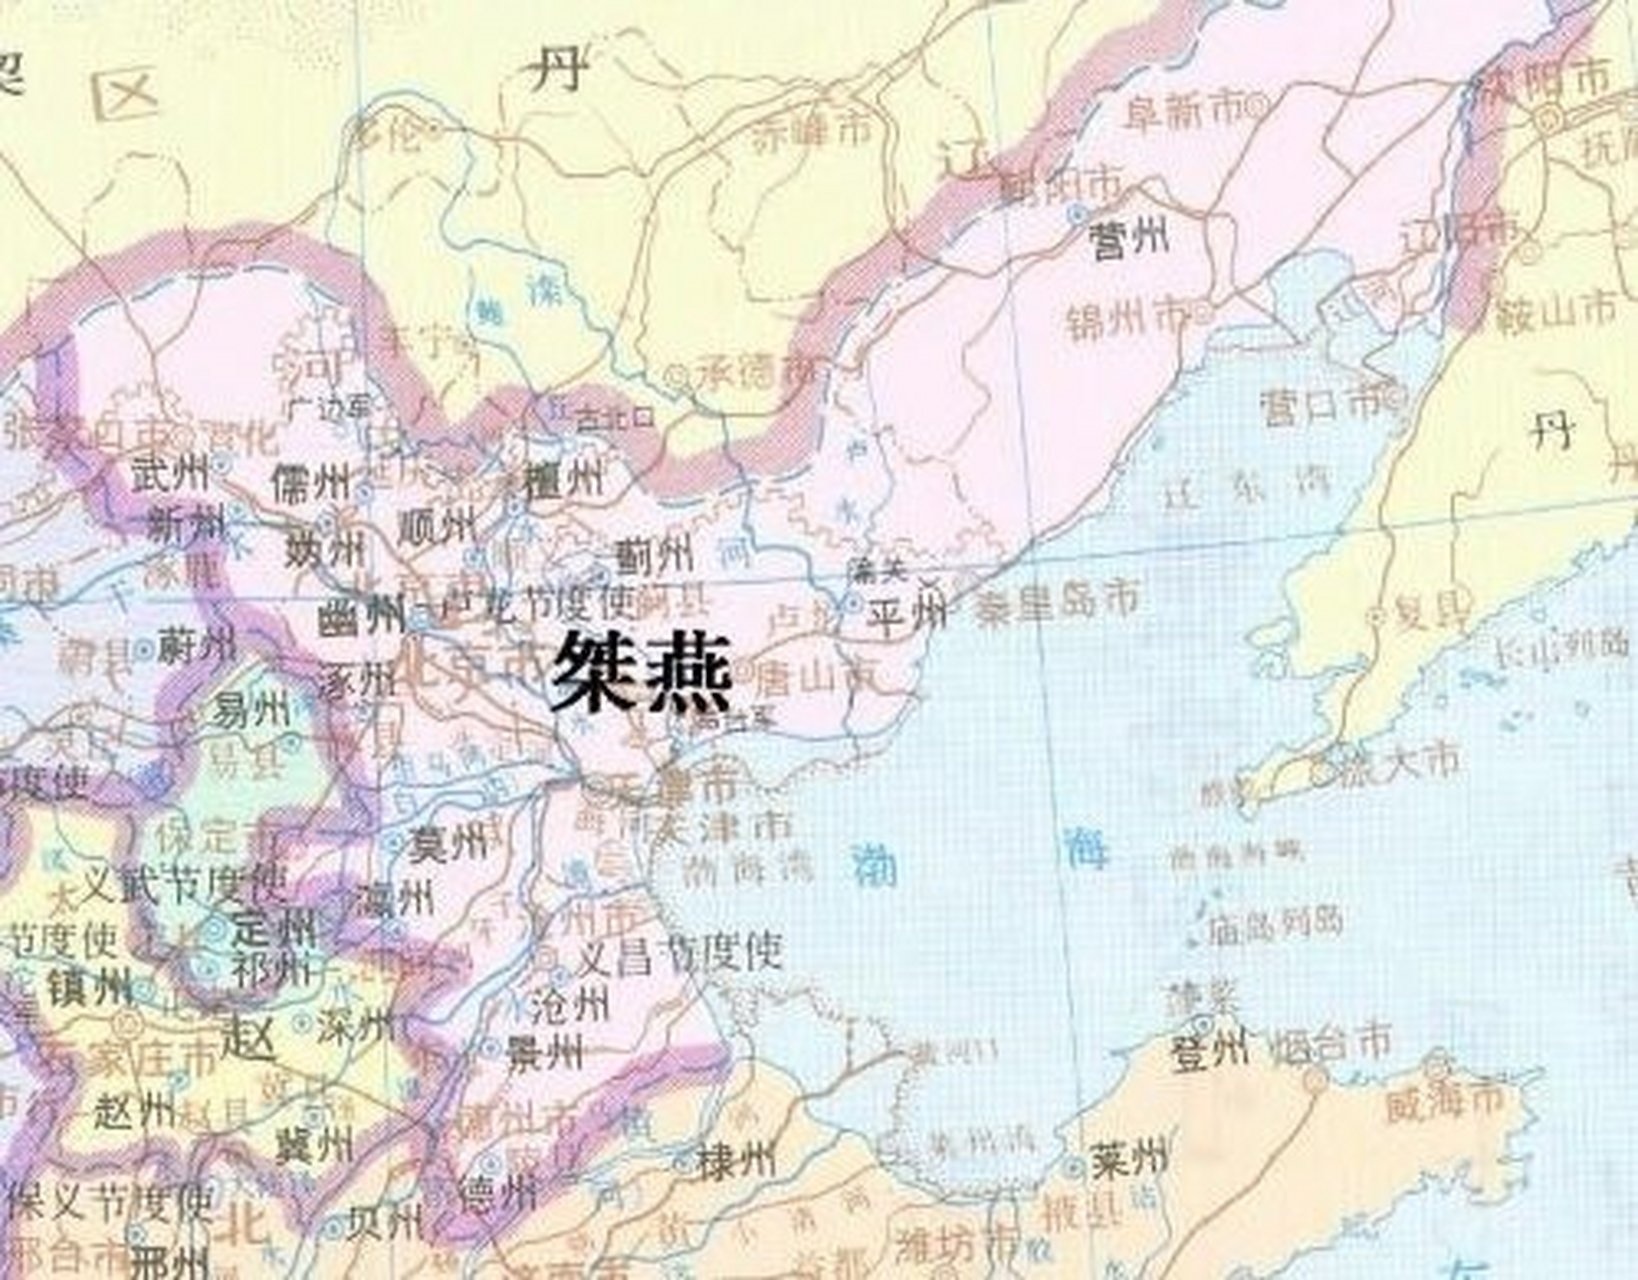 桀燕(911—913年),五代十国初期的一国,位于今北京和河北北部,因此